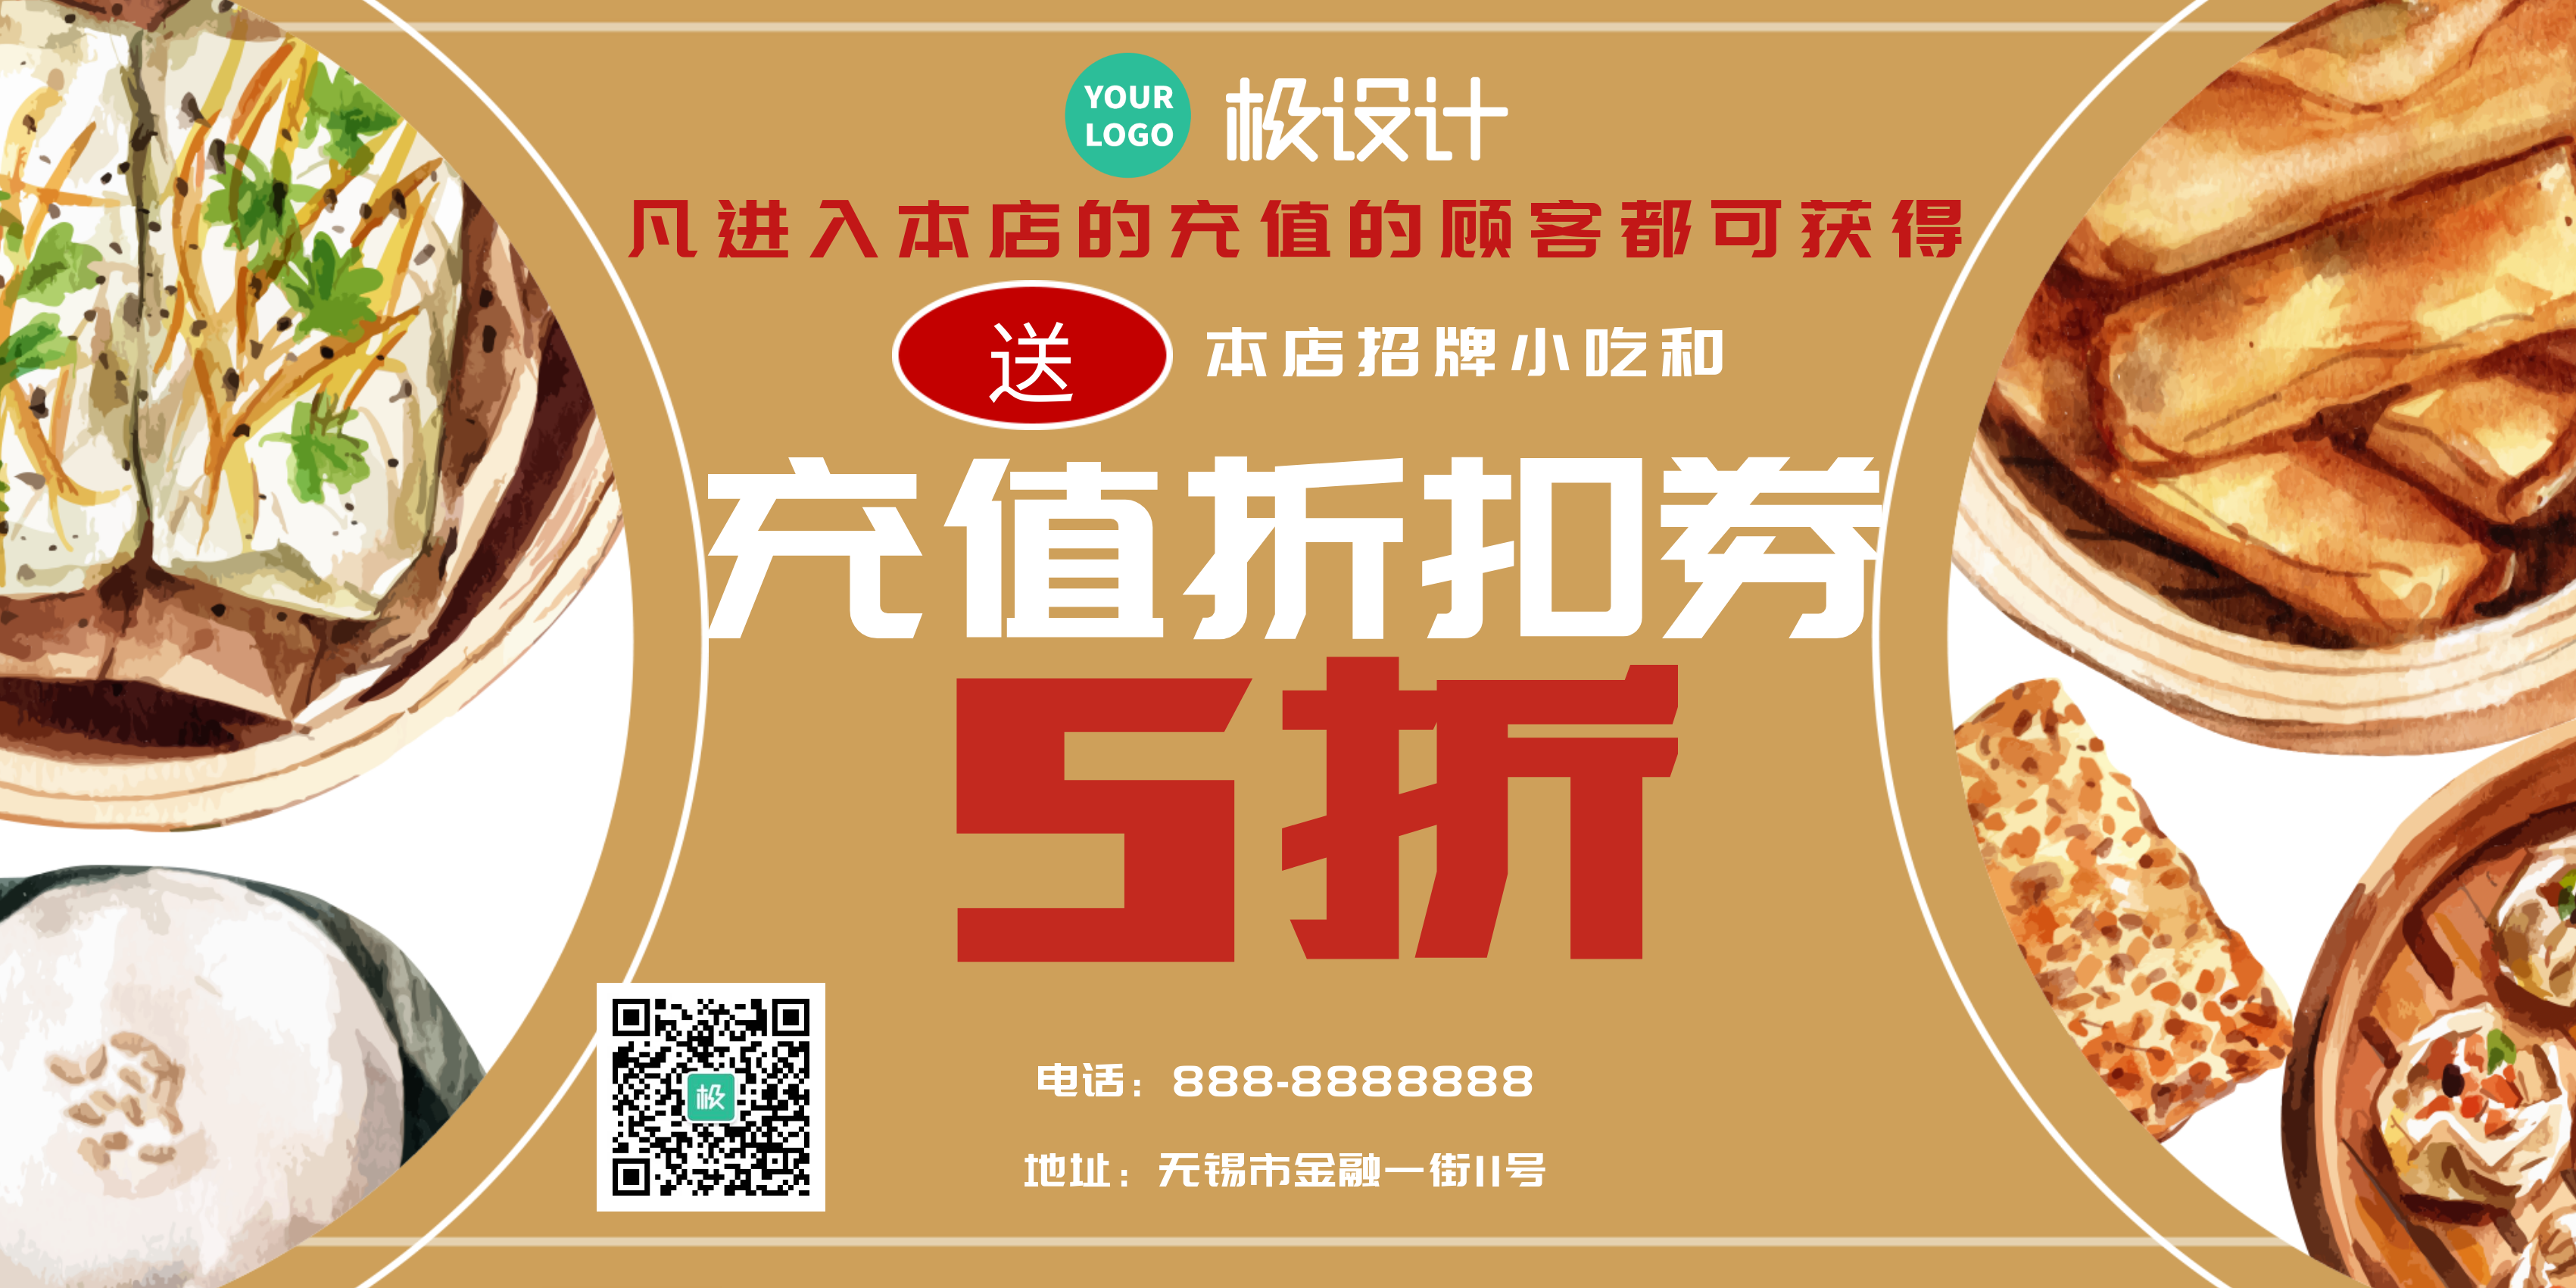 中餐折扣充值优惠活动商业宣传启屏海报